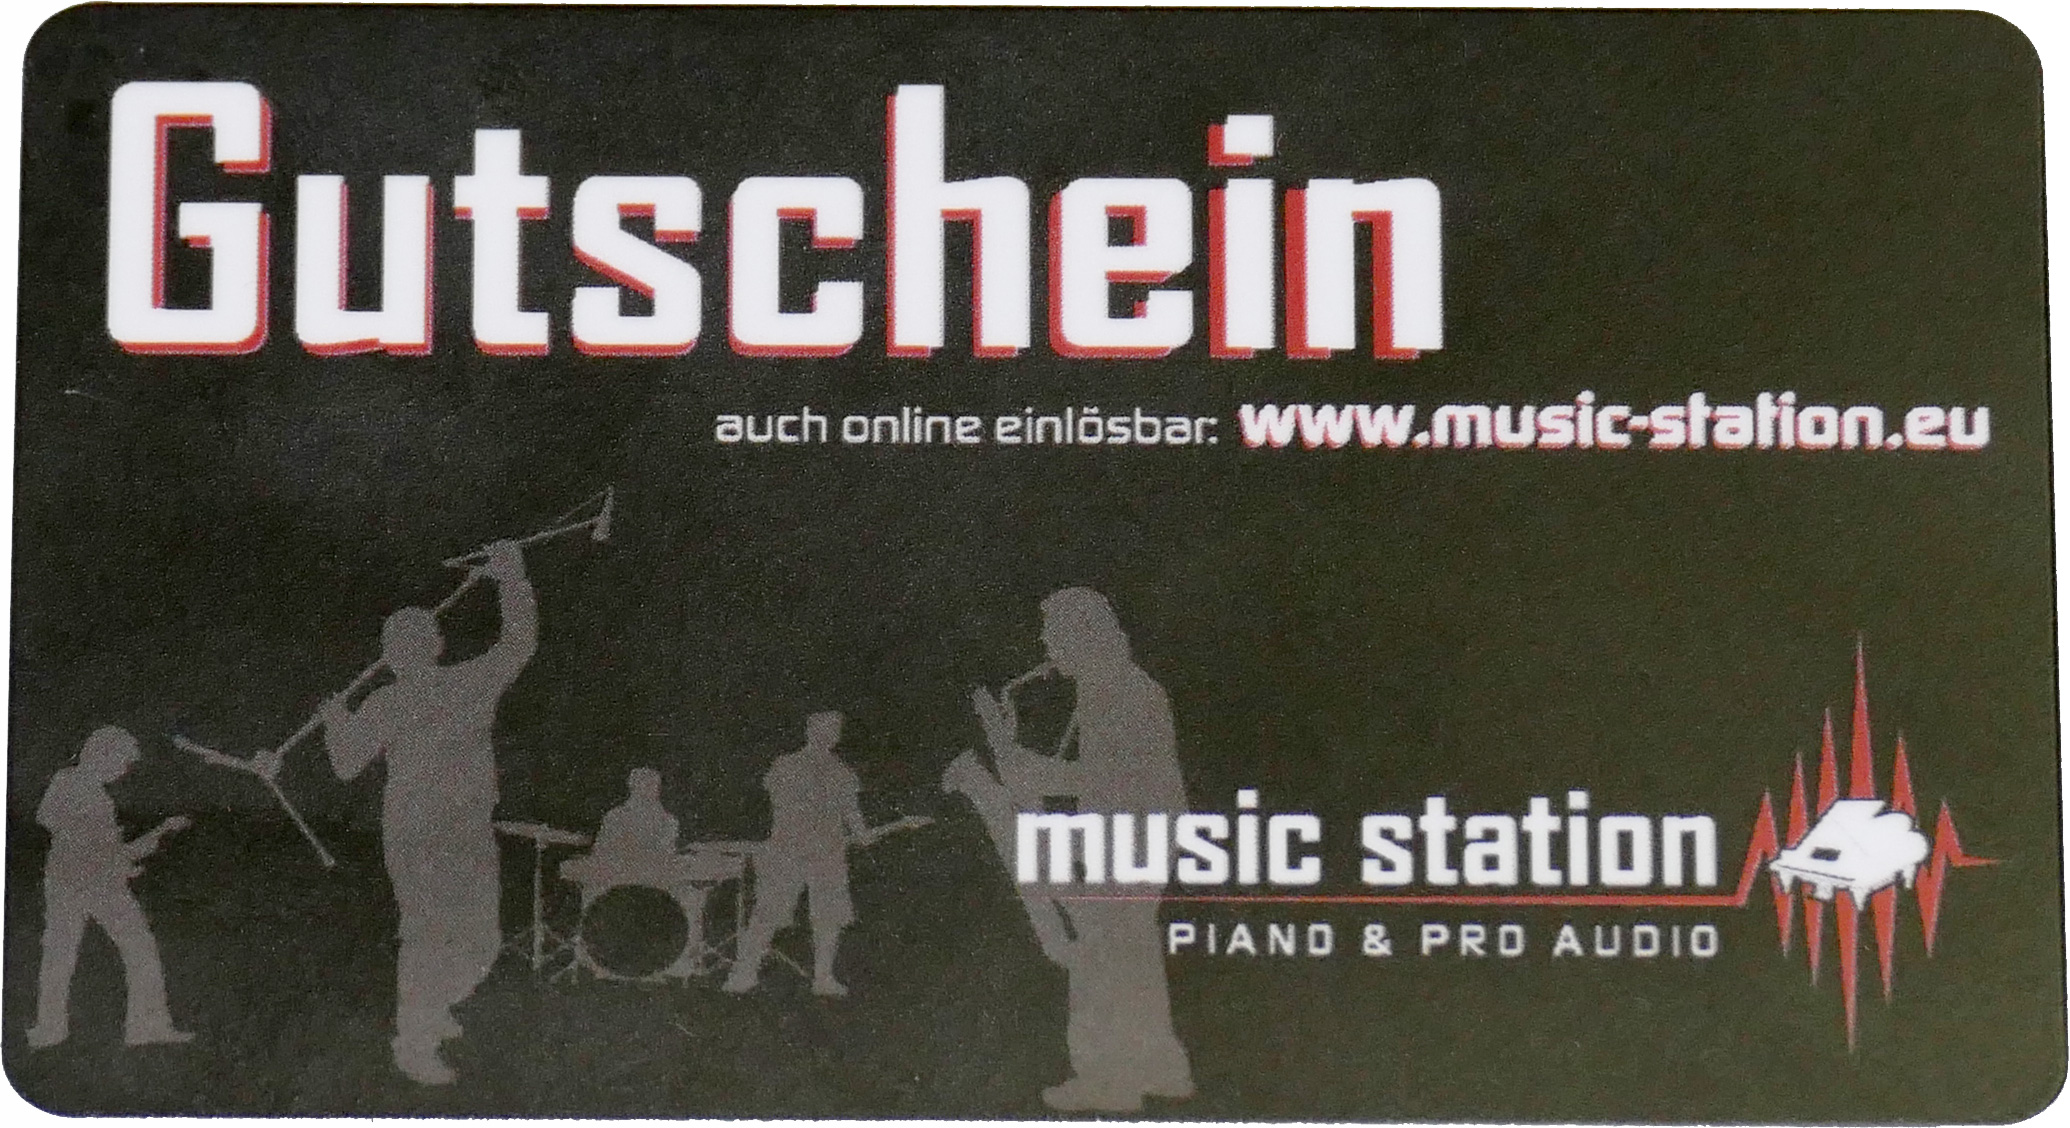 Music Station Gutschein 100 Euro